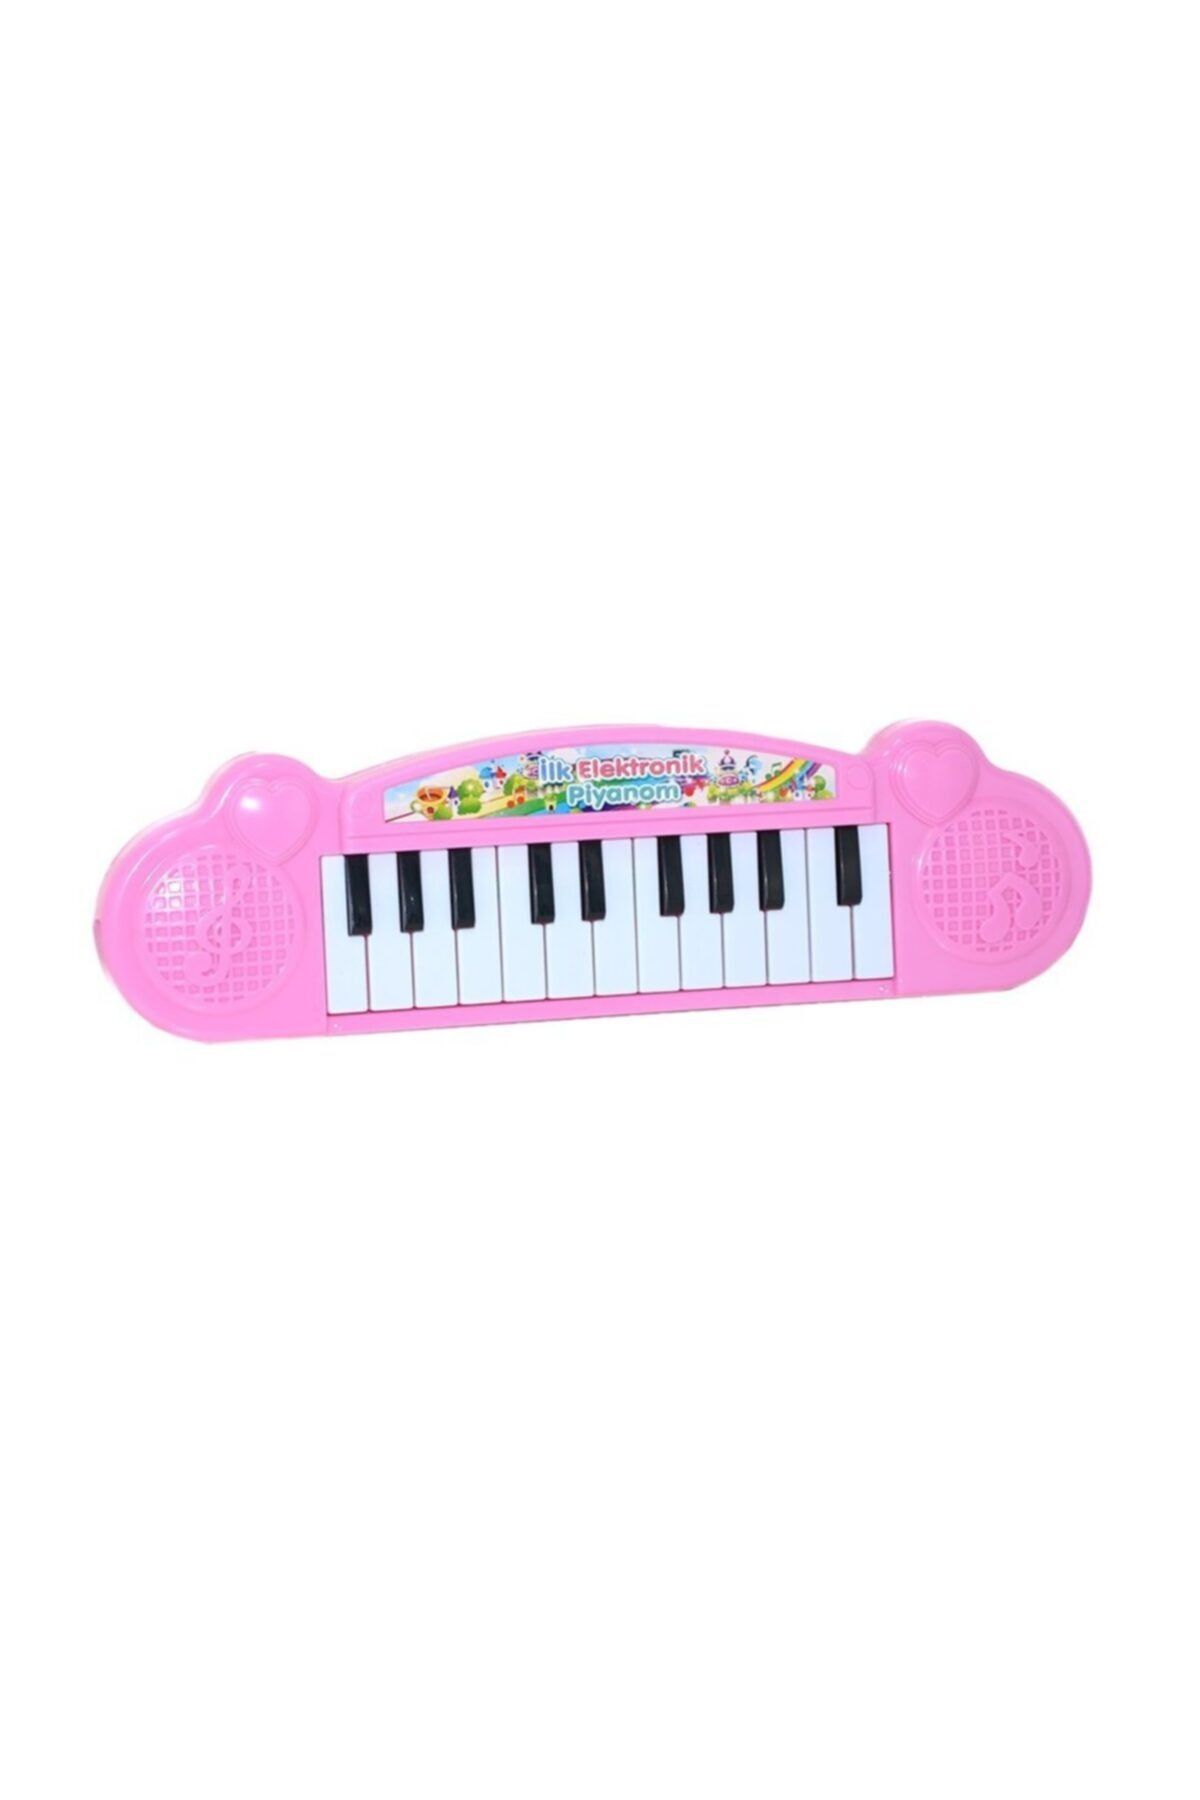 YGT Pilli Oyuncak Küçük Piyano